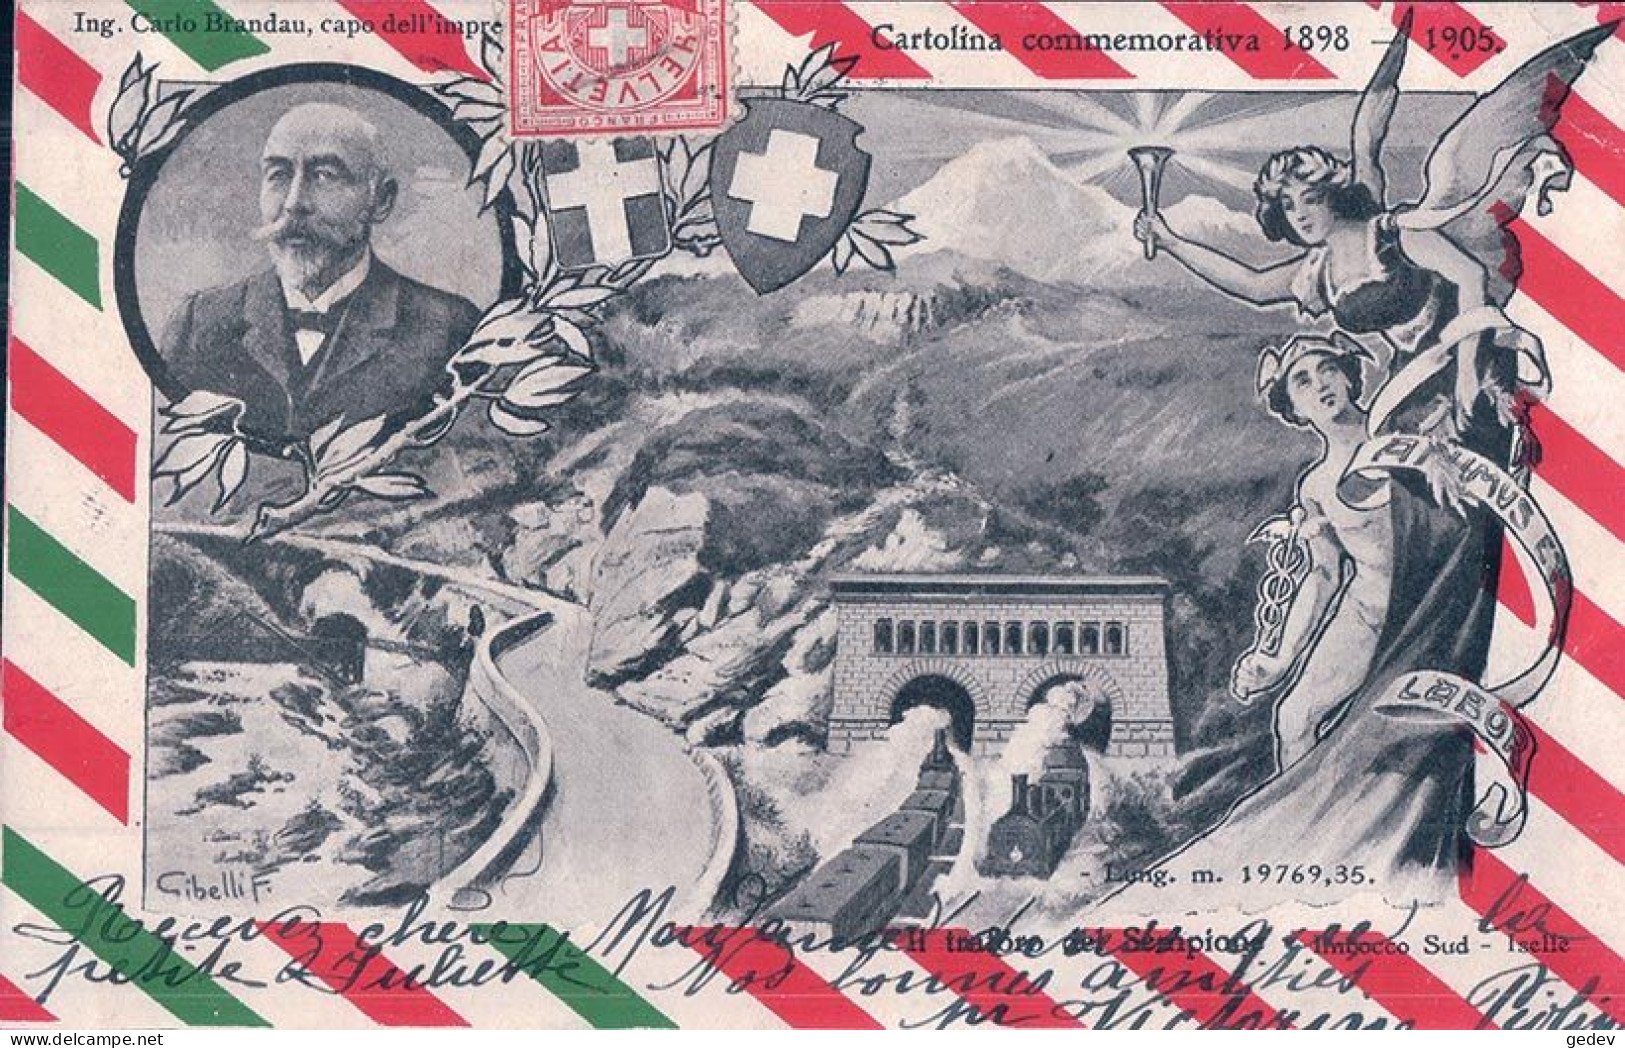 Cartolina Commemorativa 1898 - 1905, L Traforo Del Sempione, Imbocco Sud, Iselle, Illustrateur Gibelli F. (11.4.1905) - Opere D'Arte